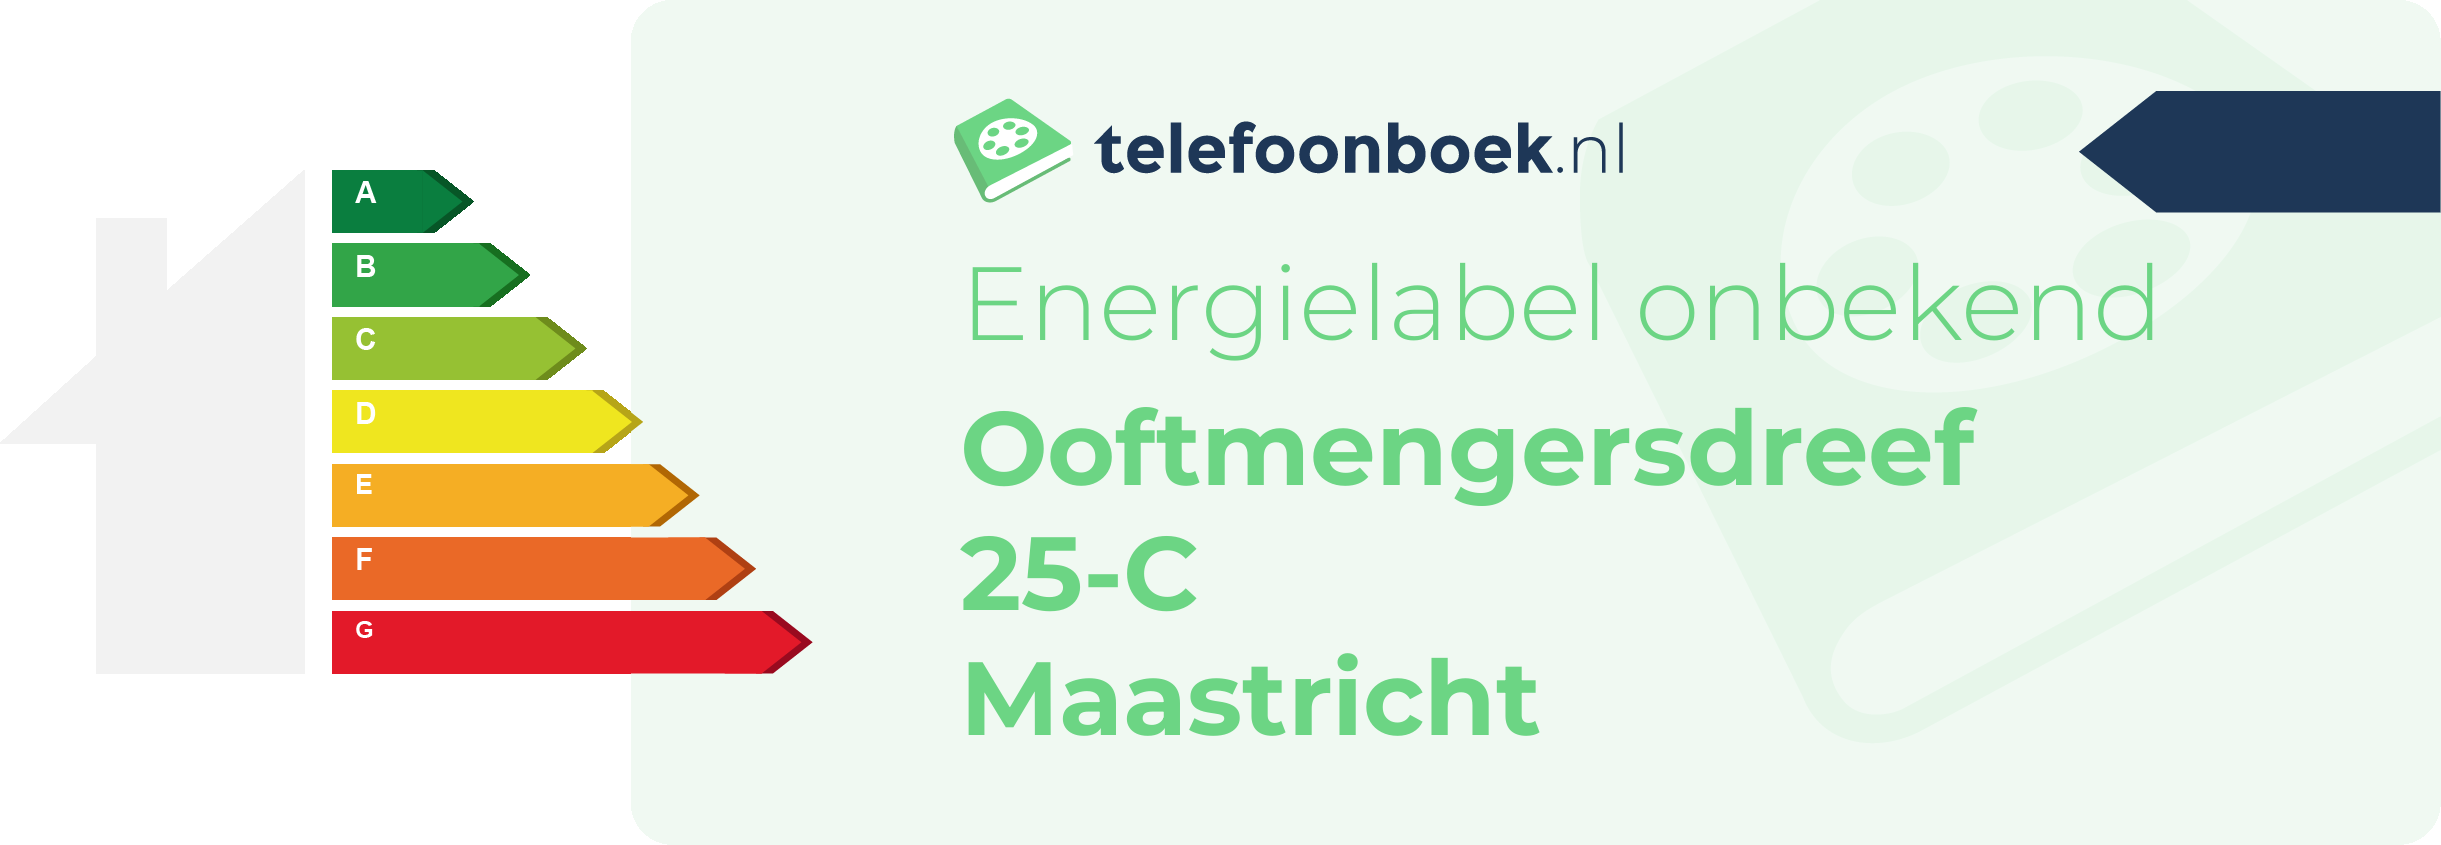 Energielabel Ooftmengersdreef 25-C Maastricht